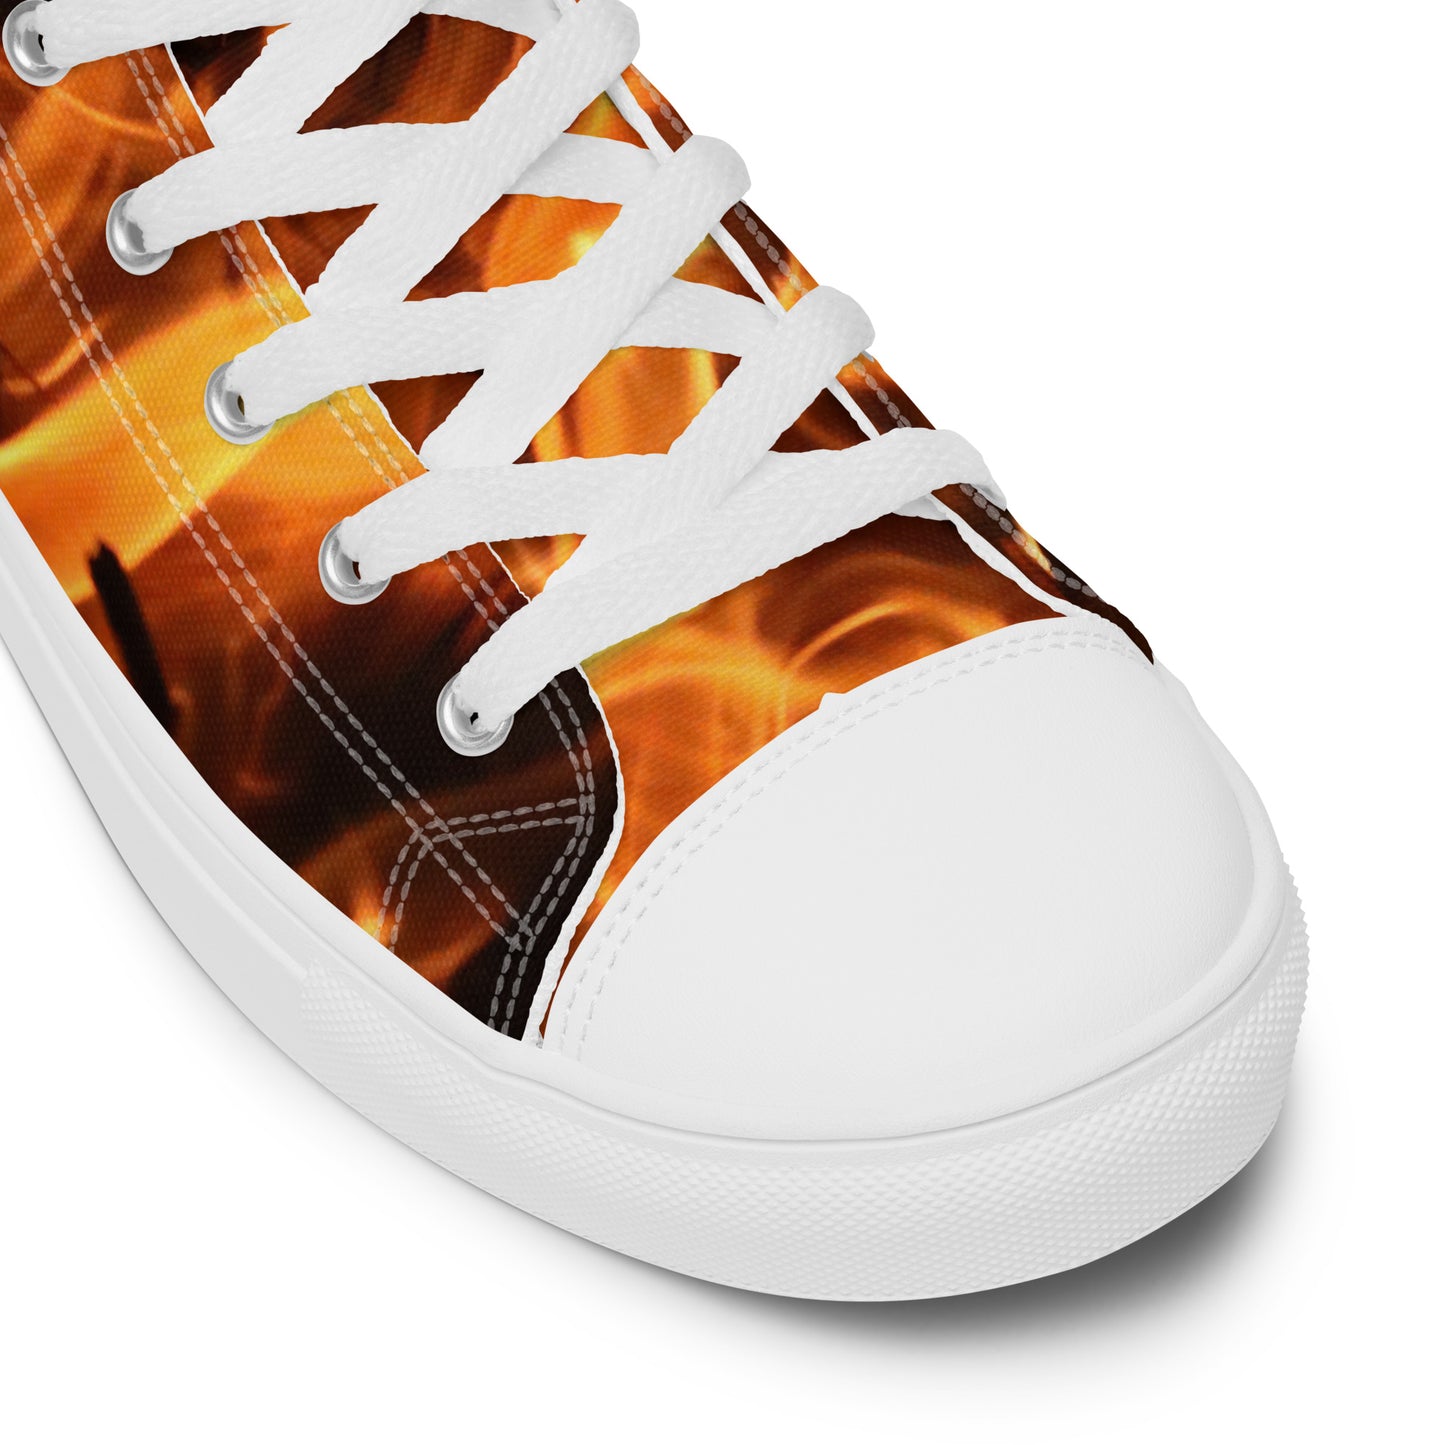 Fire Spirits Women’s high top canvas shoes - "Walk Your Talk"